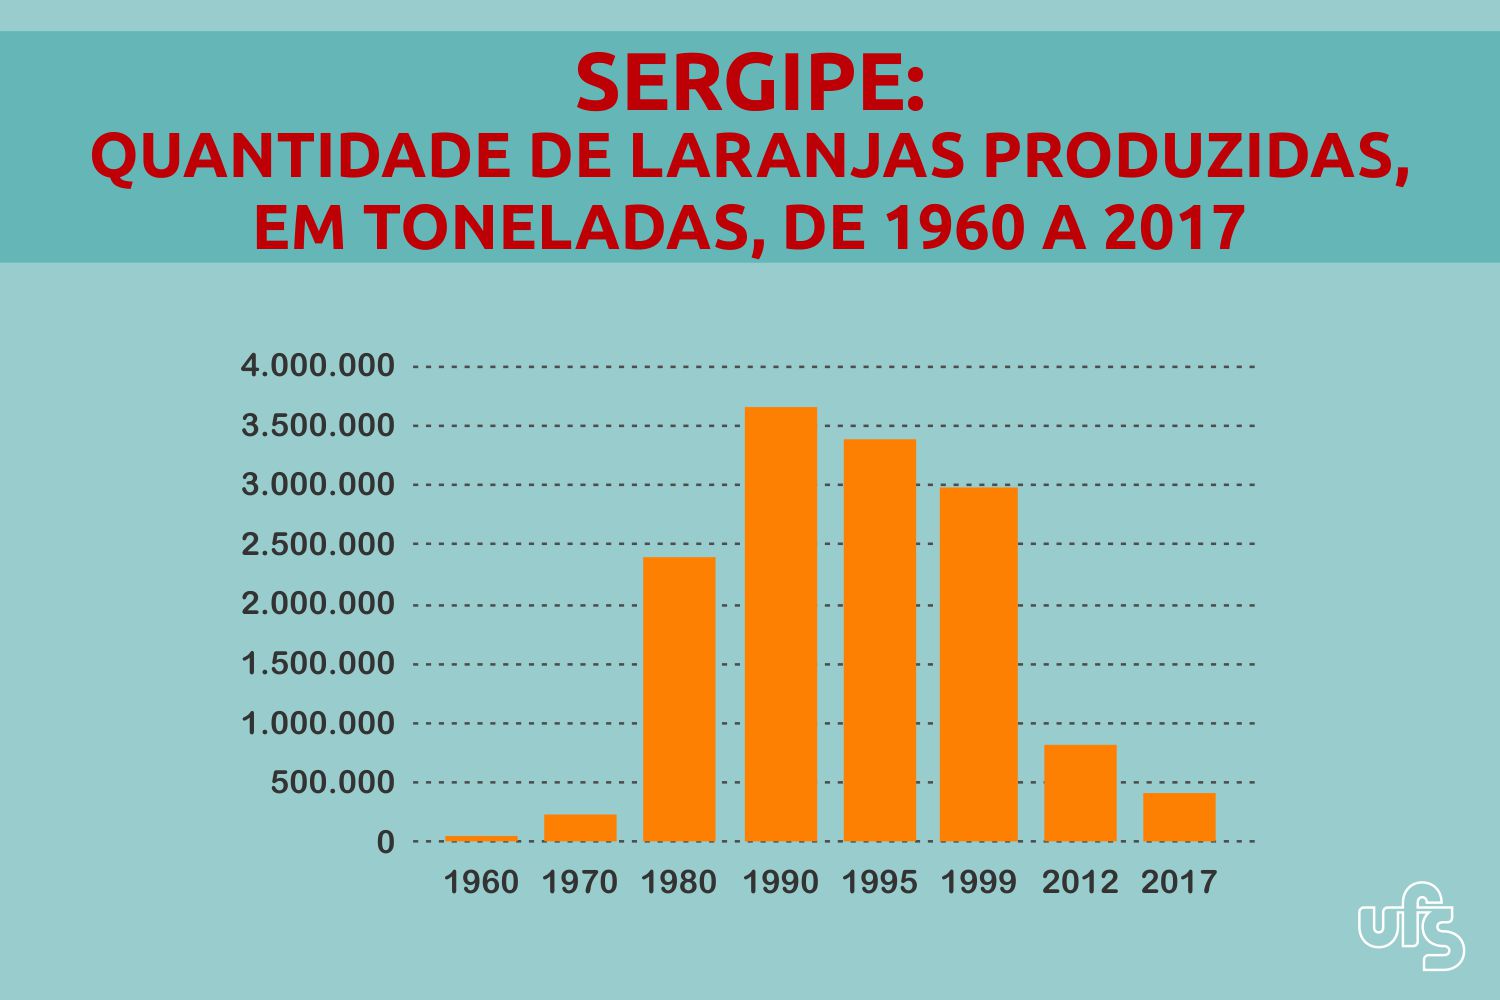 Embora ainda seja significativa, a produção de laranja vive uma crise no estado desde os anos 1990 (Fonte: trabalho da pesquisadora / Adaptado por Marcilio Costa)